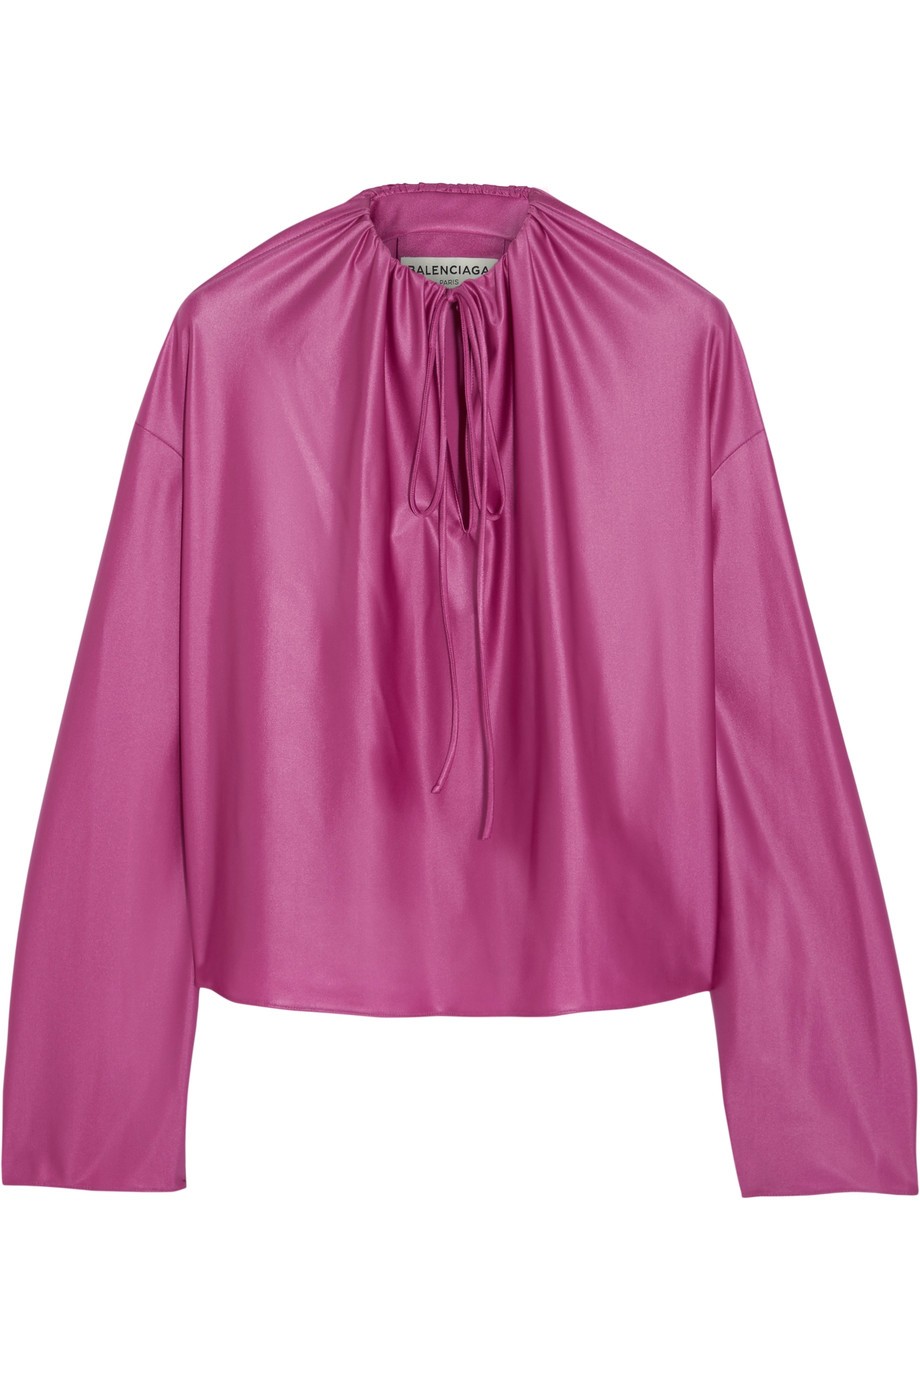 Блузка атланая Balenciaga для женщин